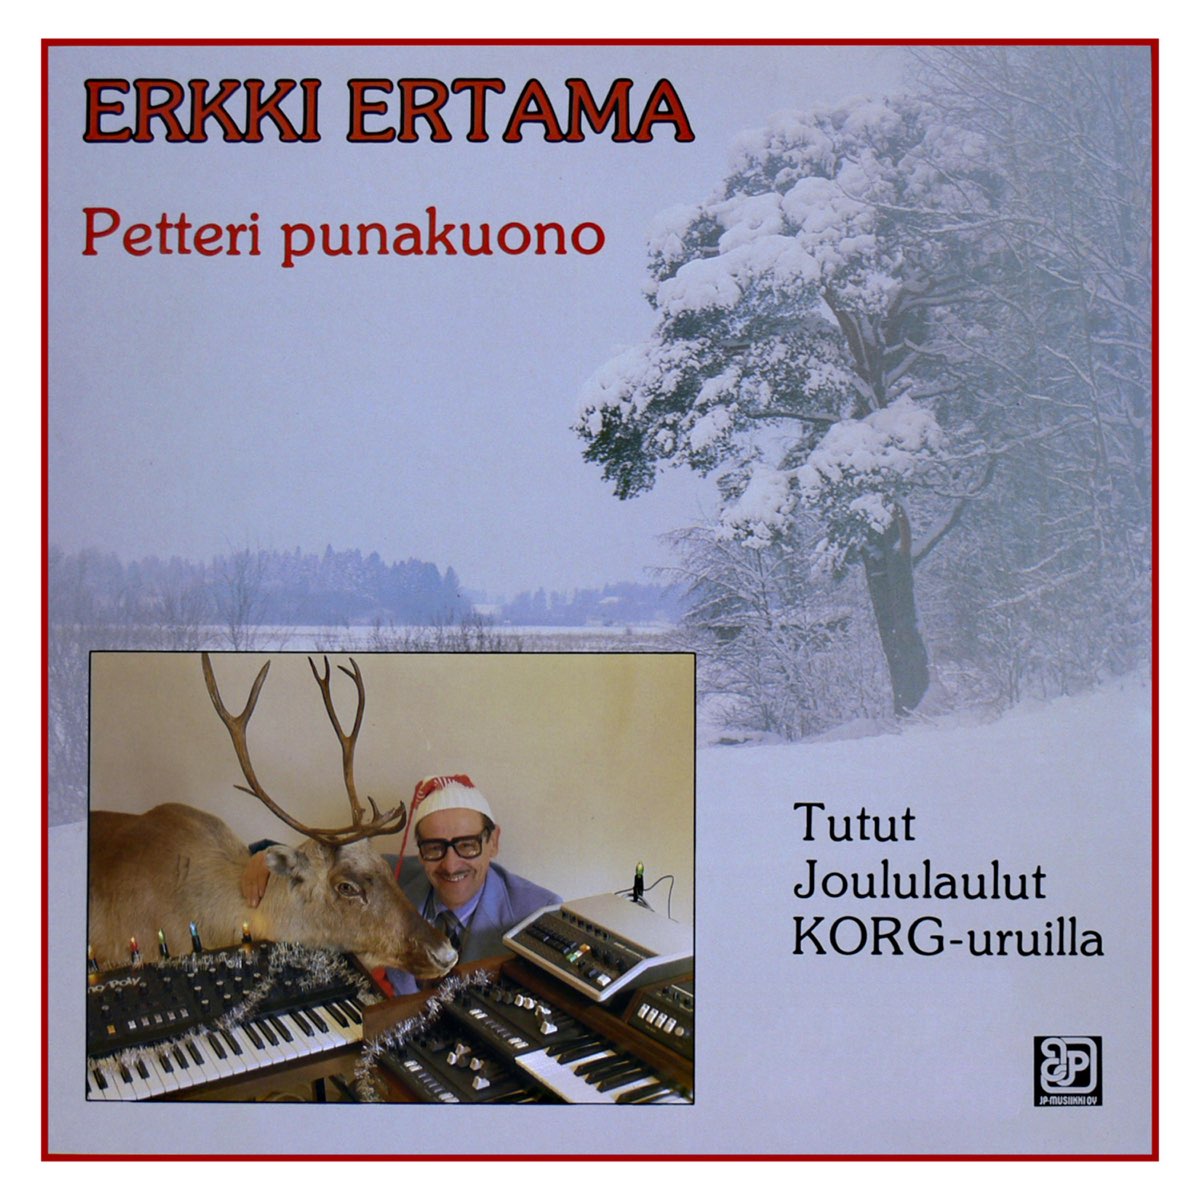 Petteri Punakuono - Album by Erkki Ertama - Apple Music